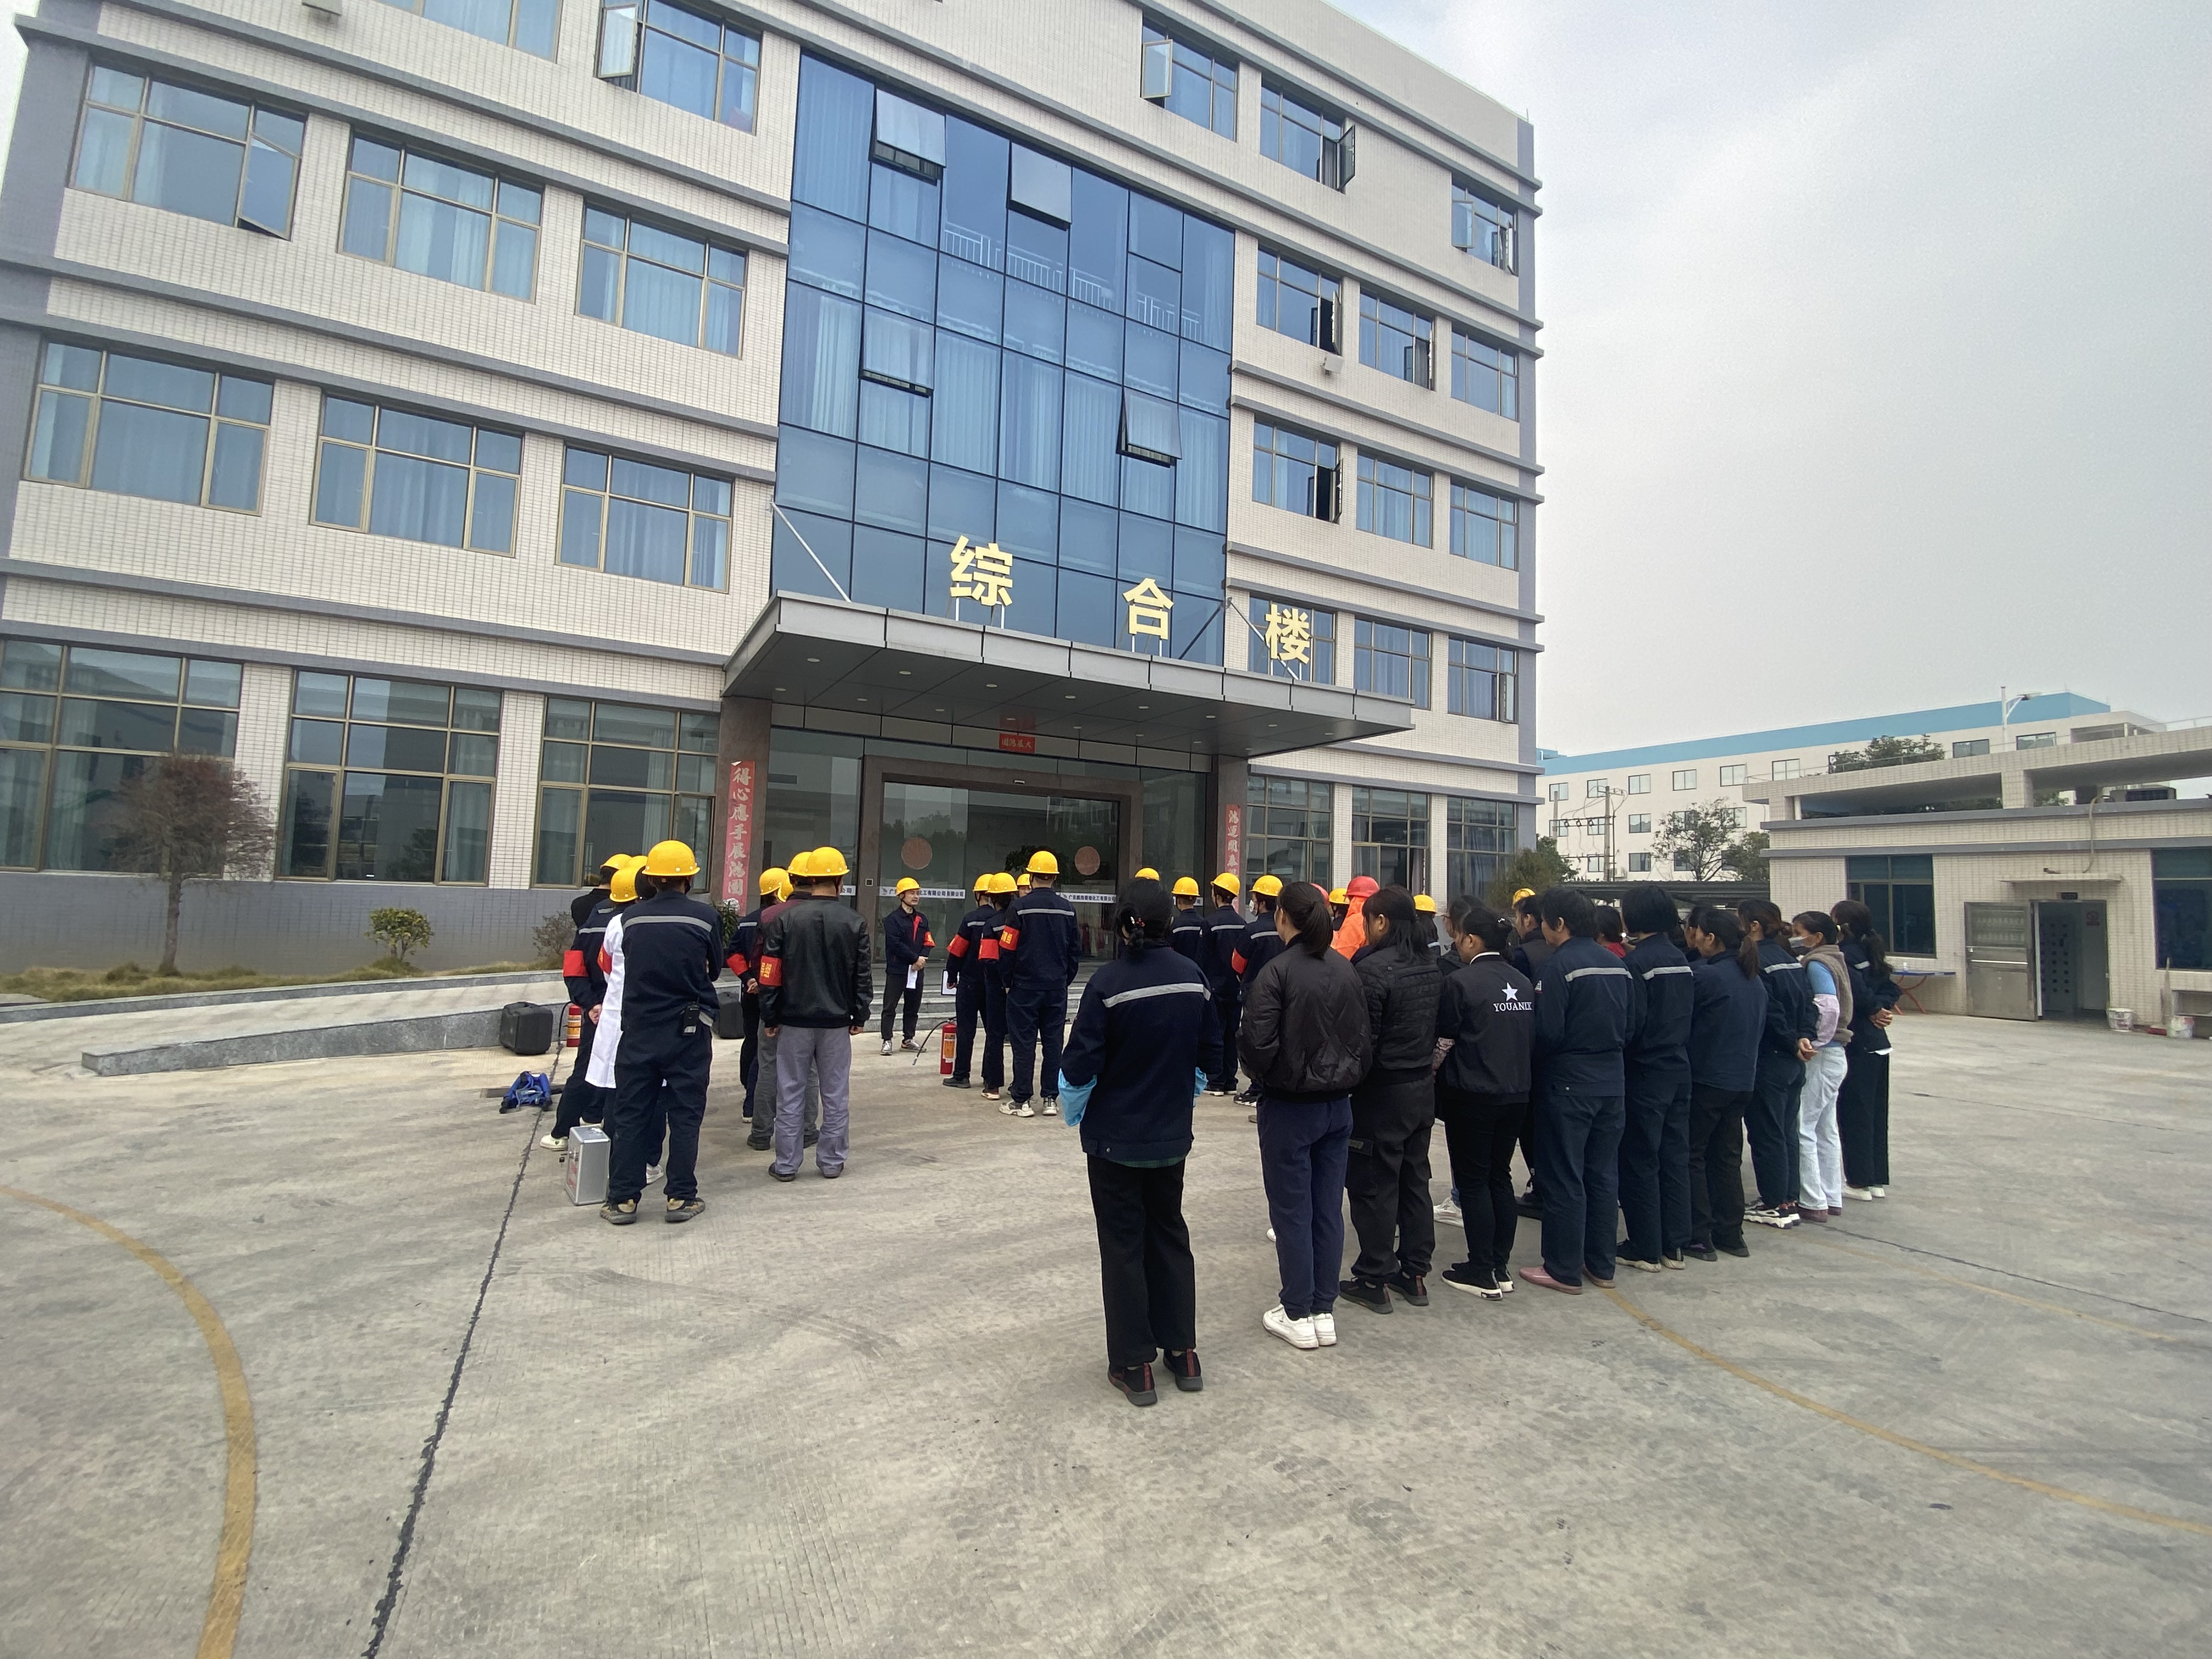 Pengwei 丨Ametlik tuletõrjeõppus peeti 12. detsembril 2021